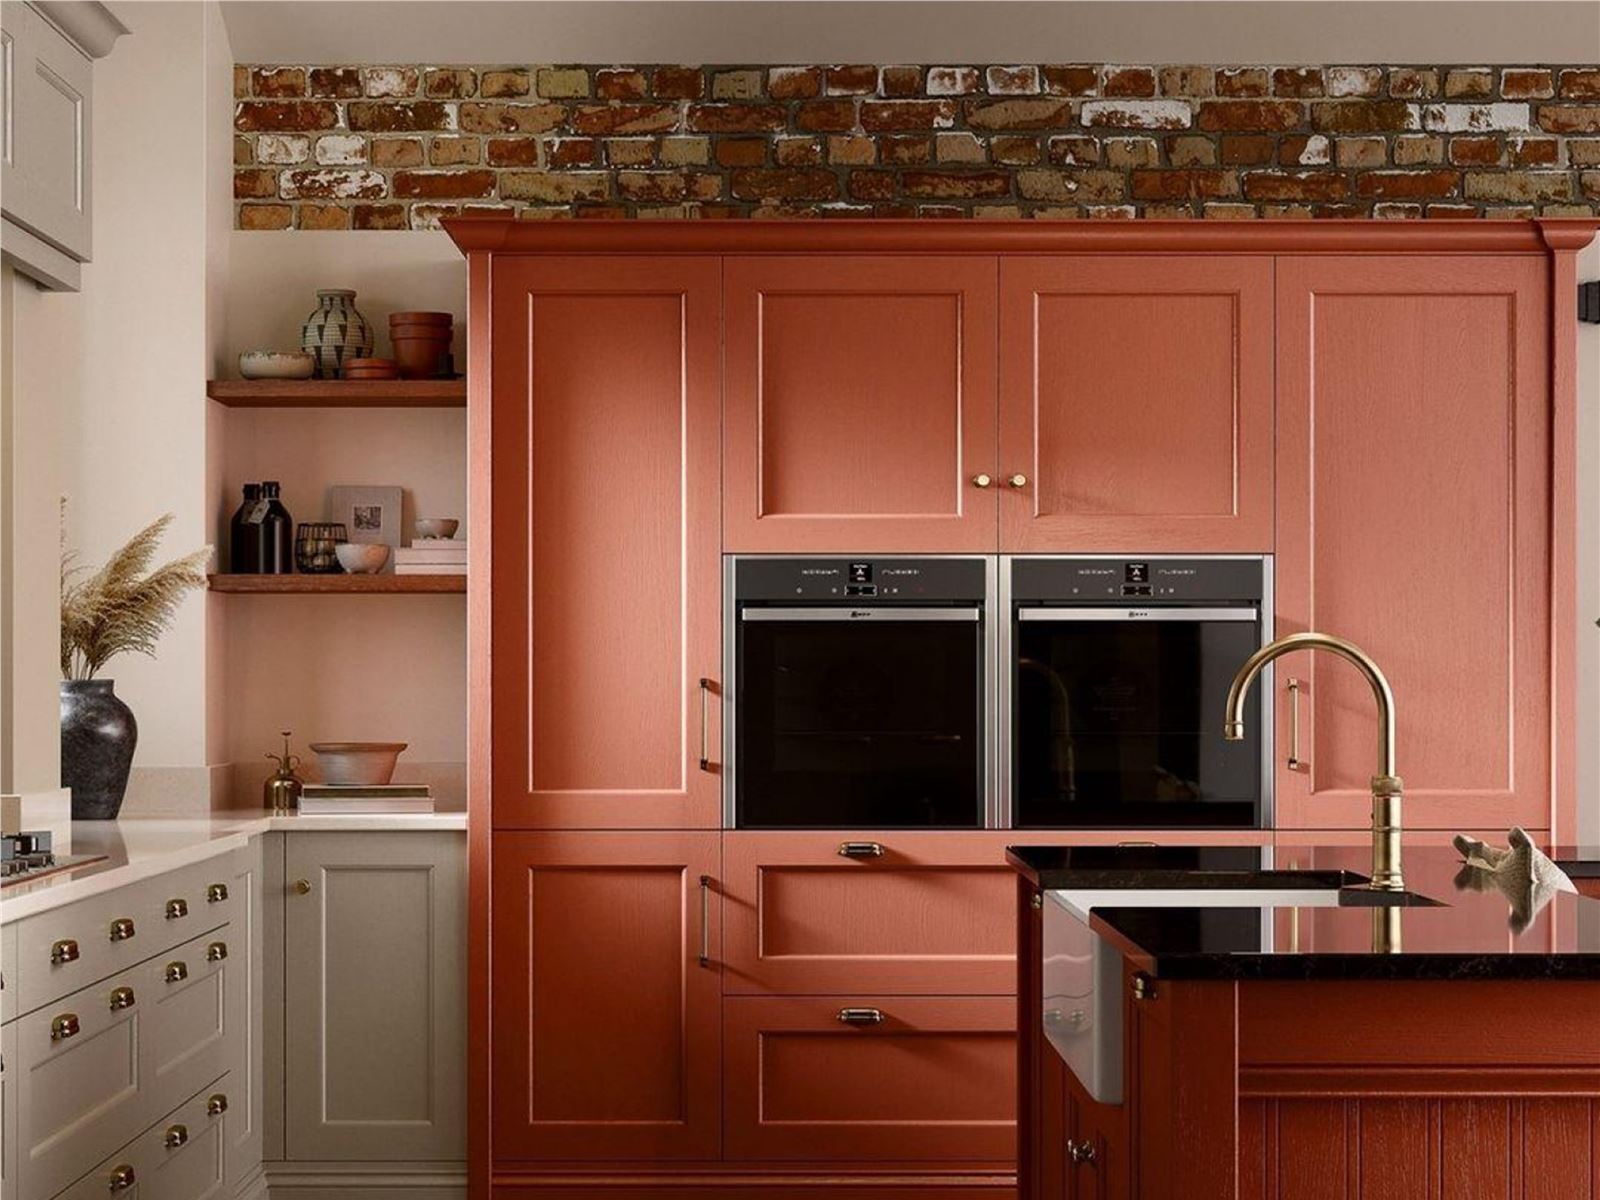 کدام رنگ ها برای آشپزخانه من مناسب است؟ | معرفی بهترین و جذاب ترین رنگ های کابینت آشپزخانه